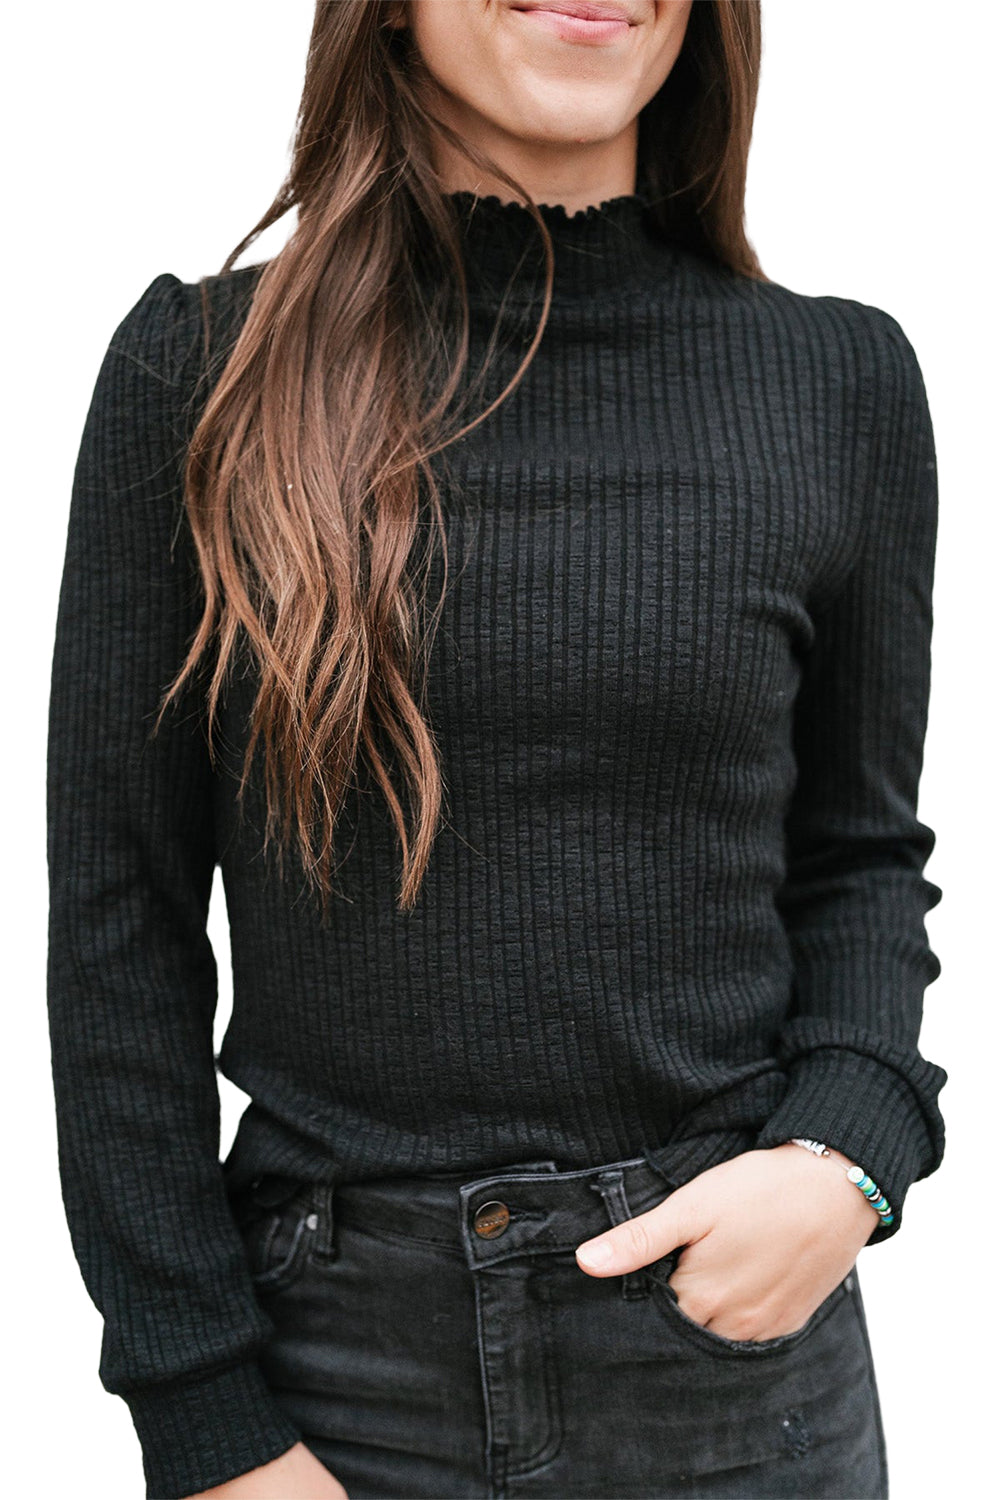 Črna enobarvna majica z dolgimi rokavi z visokim ovratnikom in naborki